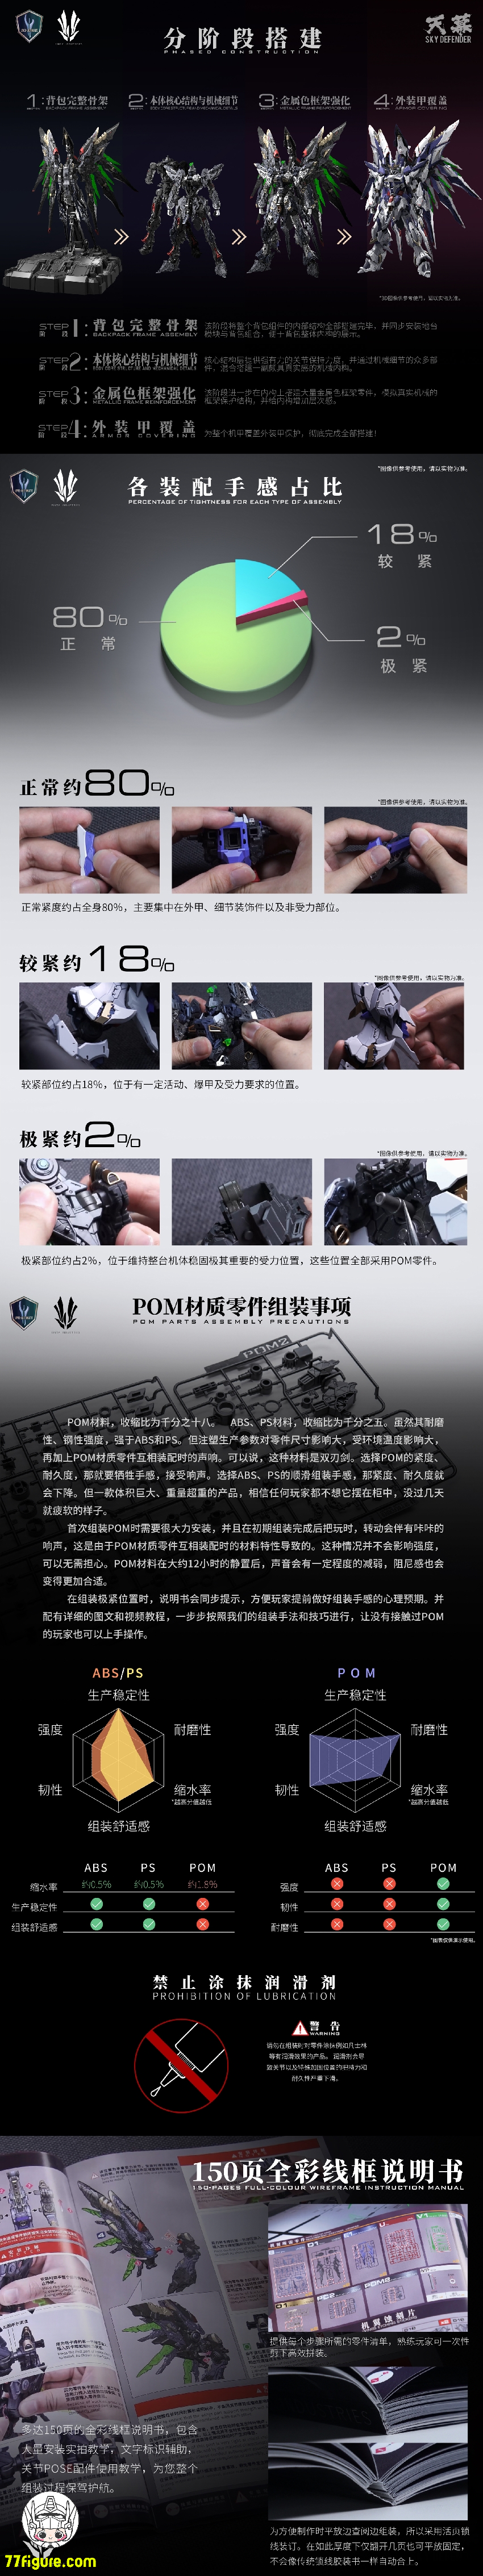 【先行販売】Einta Industries 1/72 NPCM-017 レベル-アルティメット シリーズ No.01 スカイディフェンダー プラモデル